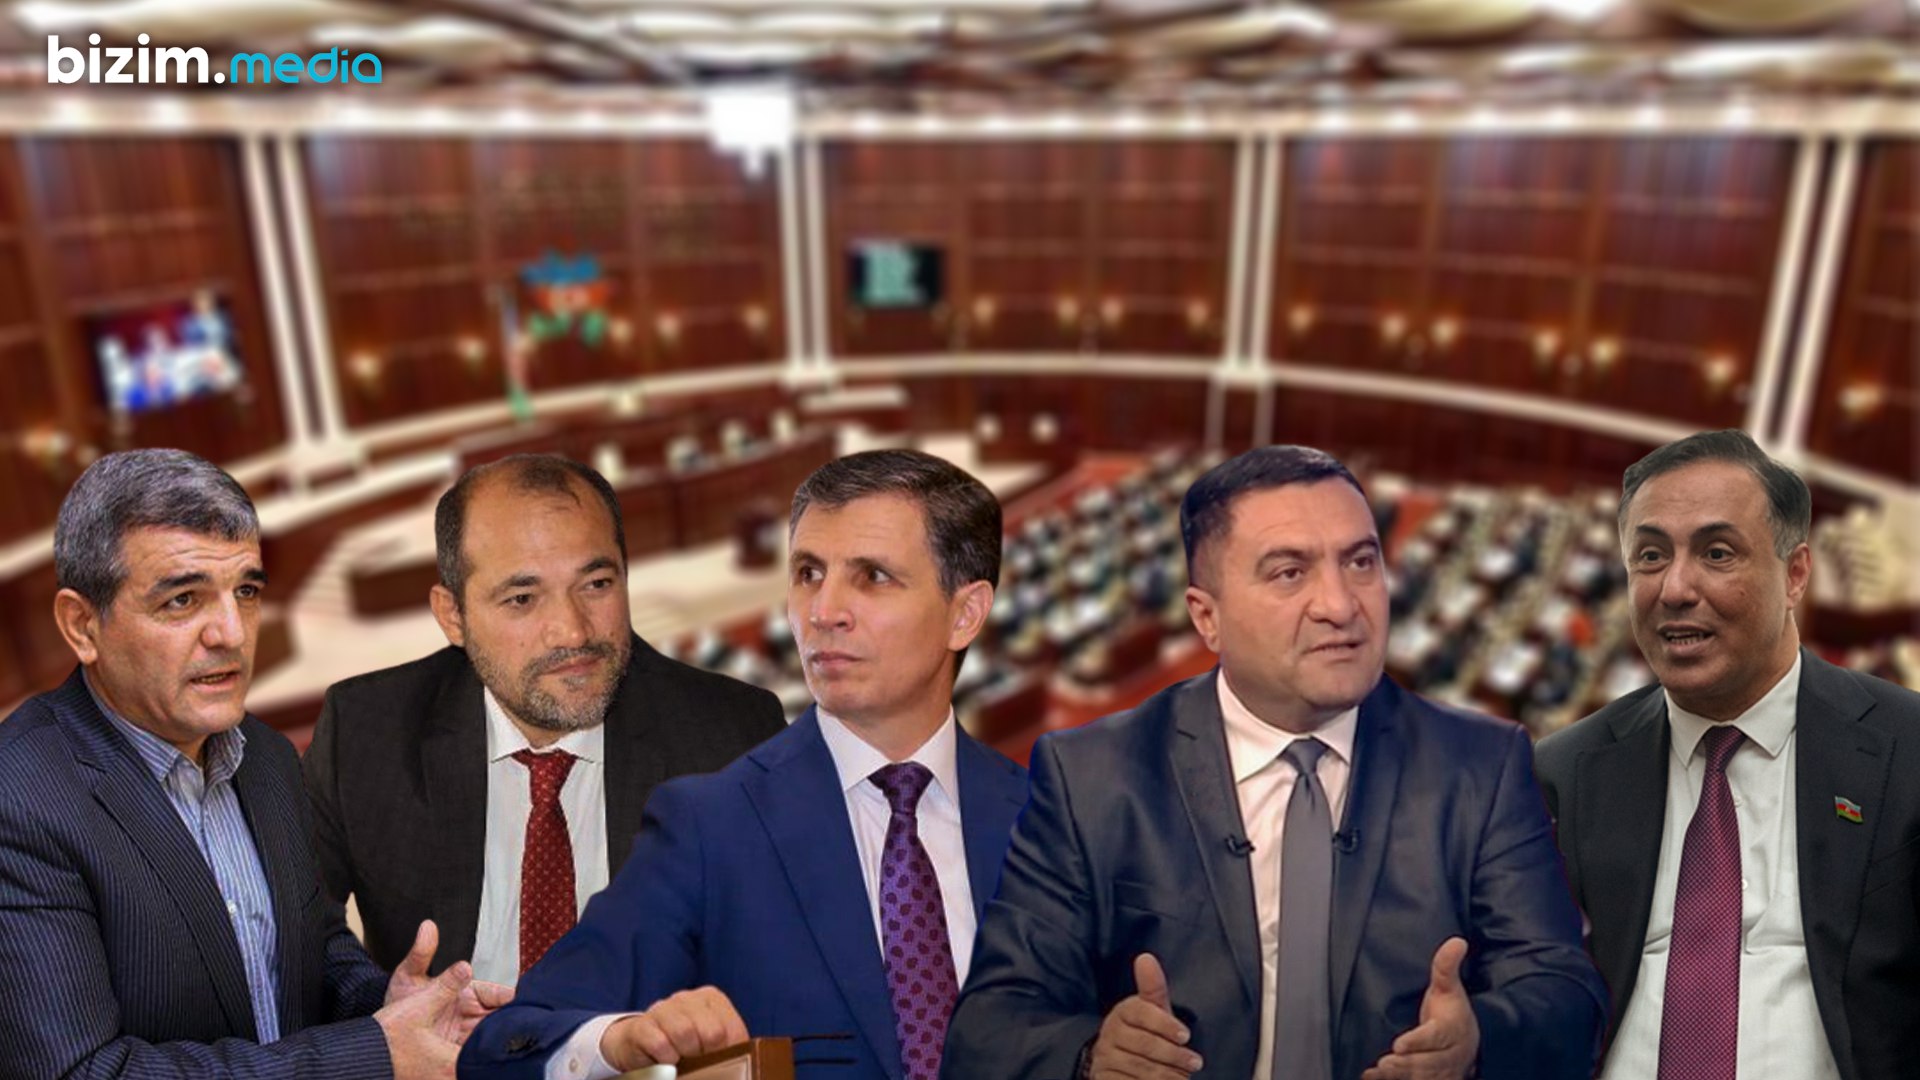 Deputatların YAY MƏZUNİYYƏTİ: Fazil Mustafa futbol oynayacaq, bəs başqaları? - SORĞU